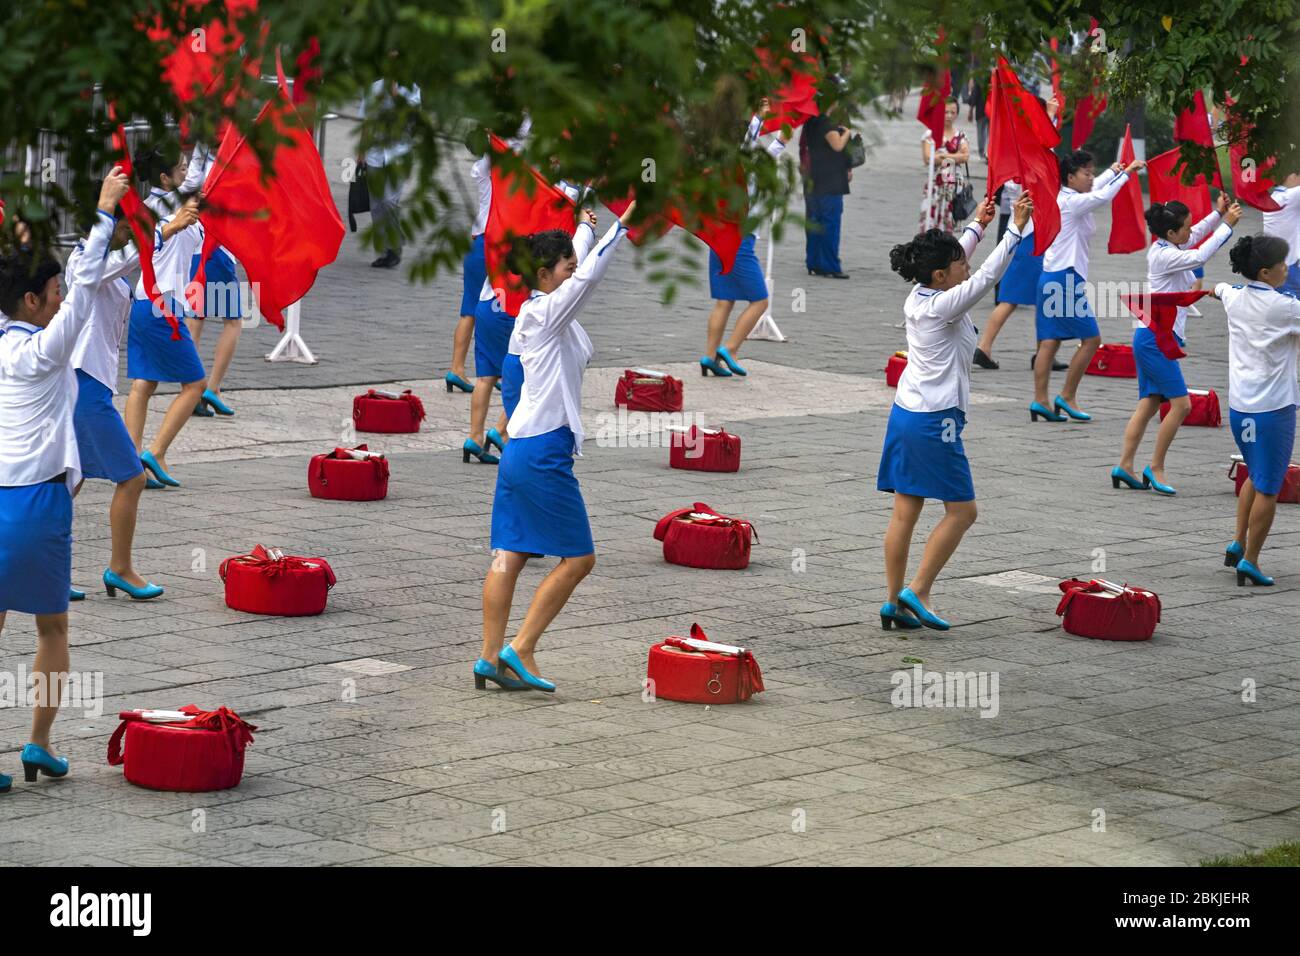 Corea del Norte, Pyongyang, mujeres sin empleo que animan a la gente que trabaja Foto de stock